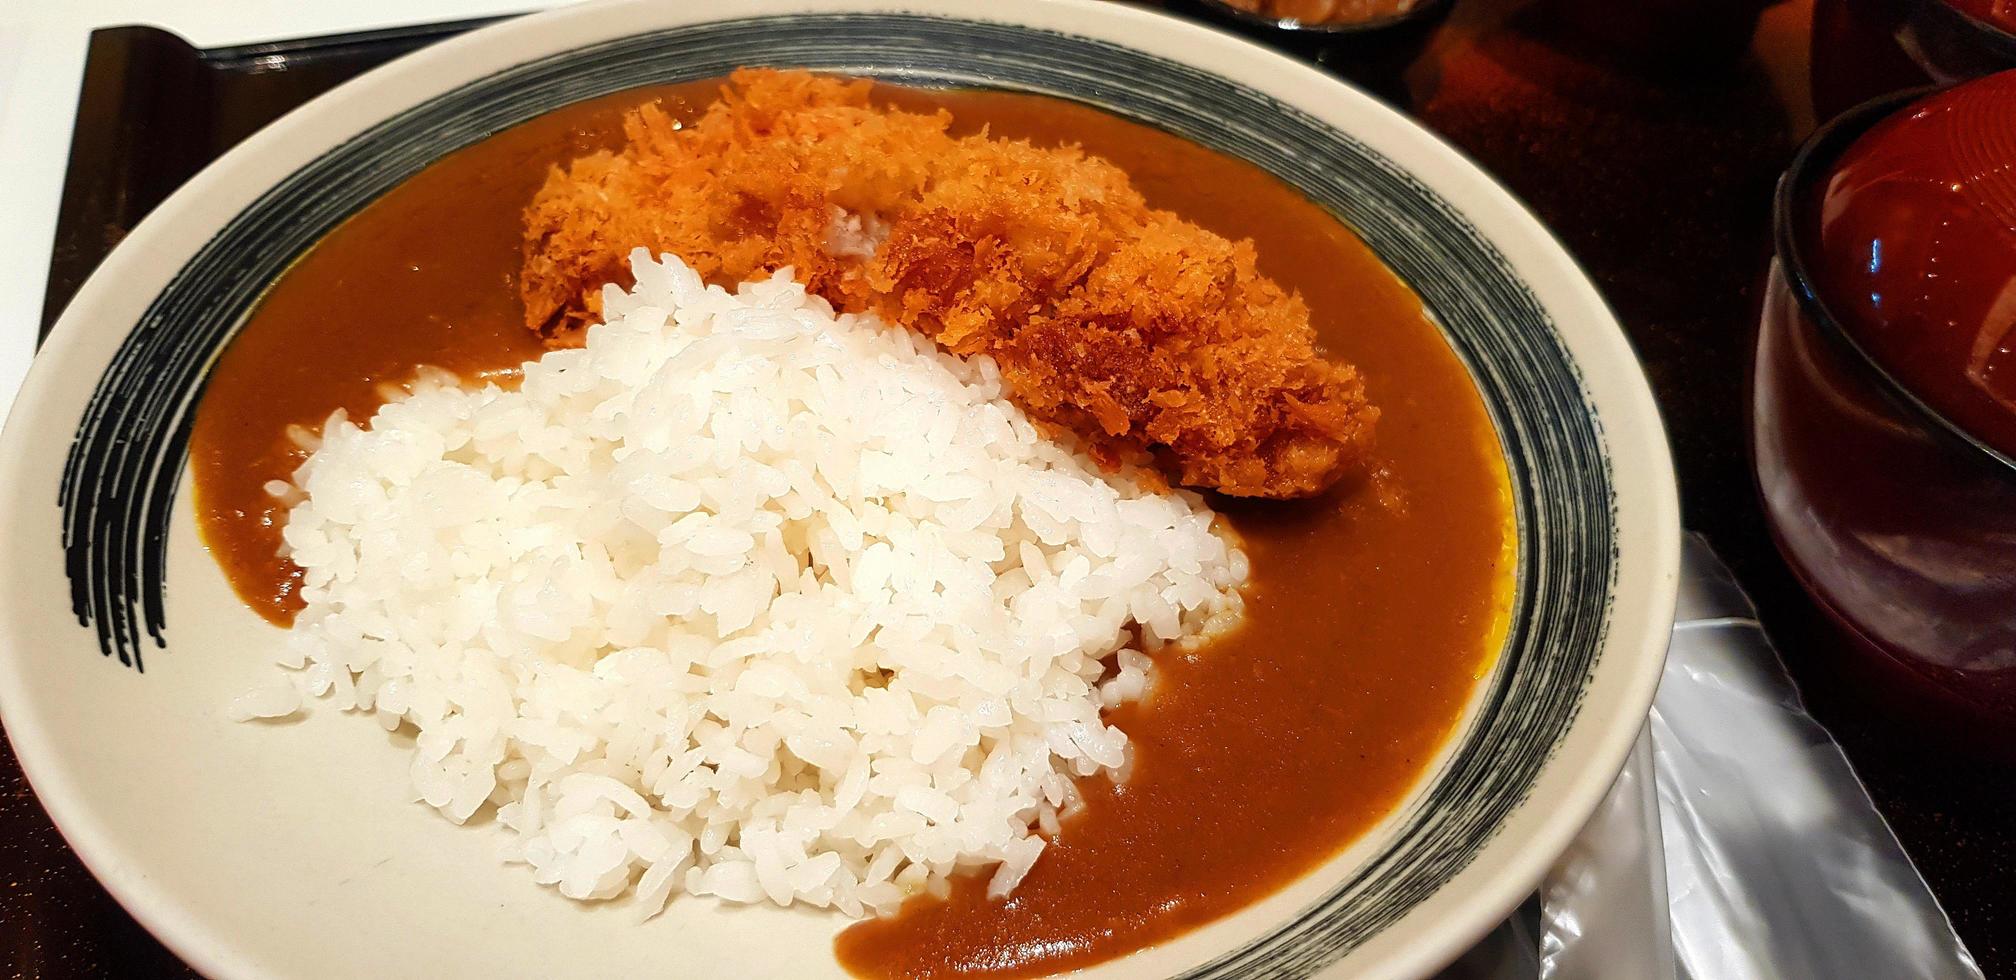 dichtbij omhoog pittig kerrie rijst- met diep gebakken rundvlees of varkensvlees Aan schotel Bij Japan restaurant. Aziatisch voedsel Aan bord in Japans stijl foto